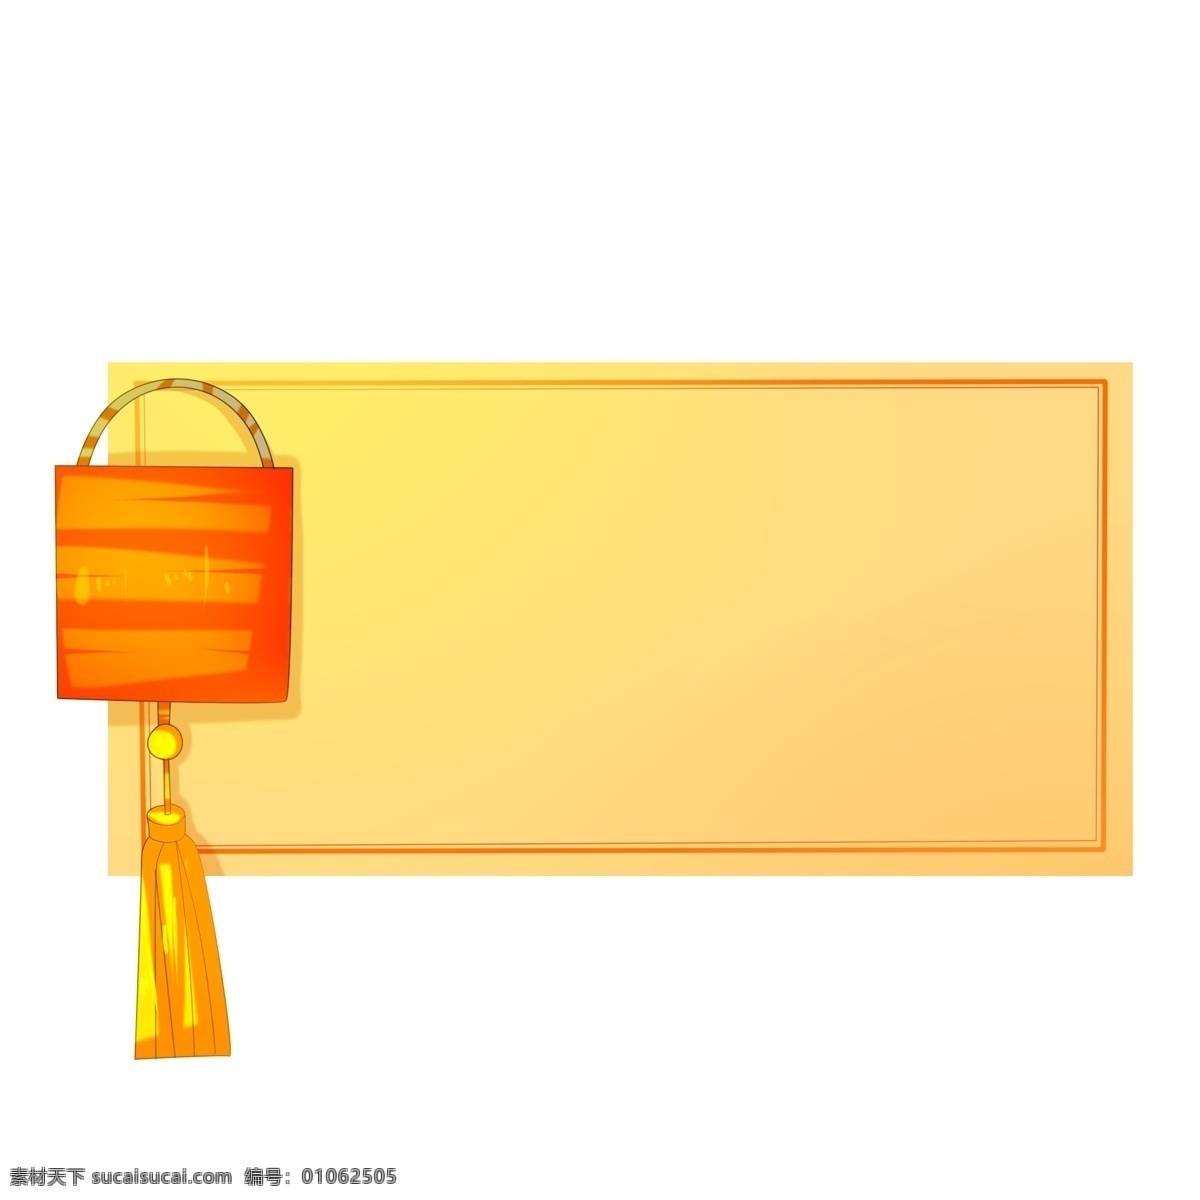 手绘 橙色 色 灯笼 边框 长方形 灯笼边框插画 大红灯笼 挂起的灯笼 漂亮的灯笼 黄色吊须边框